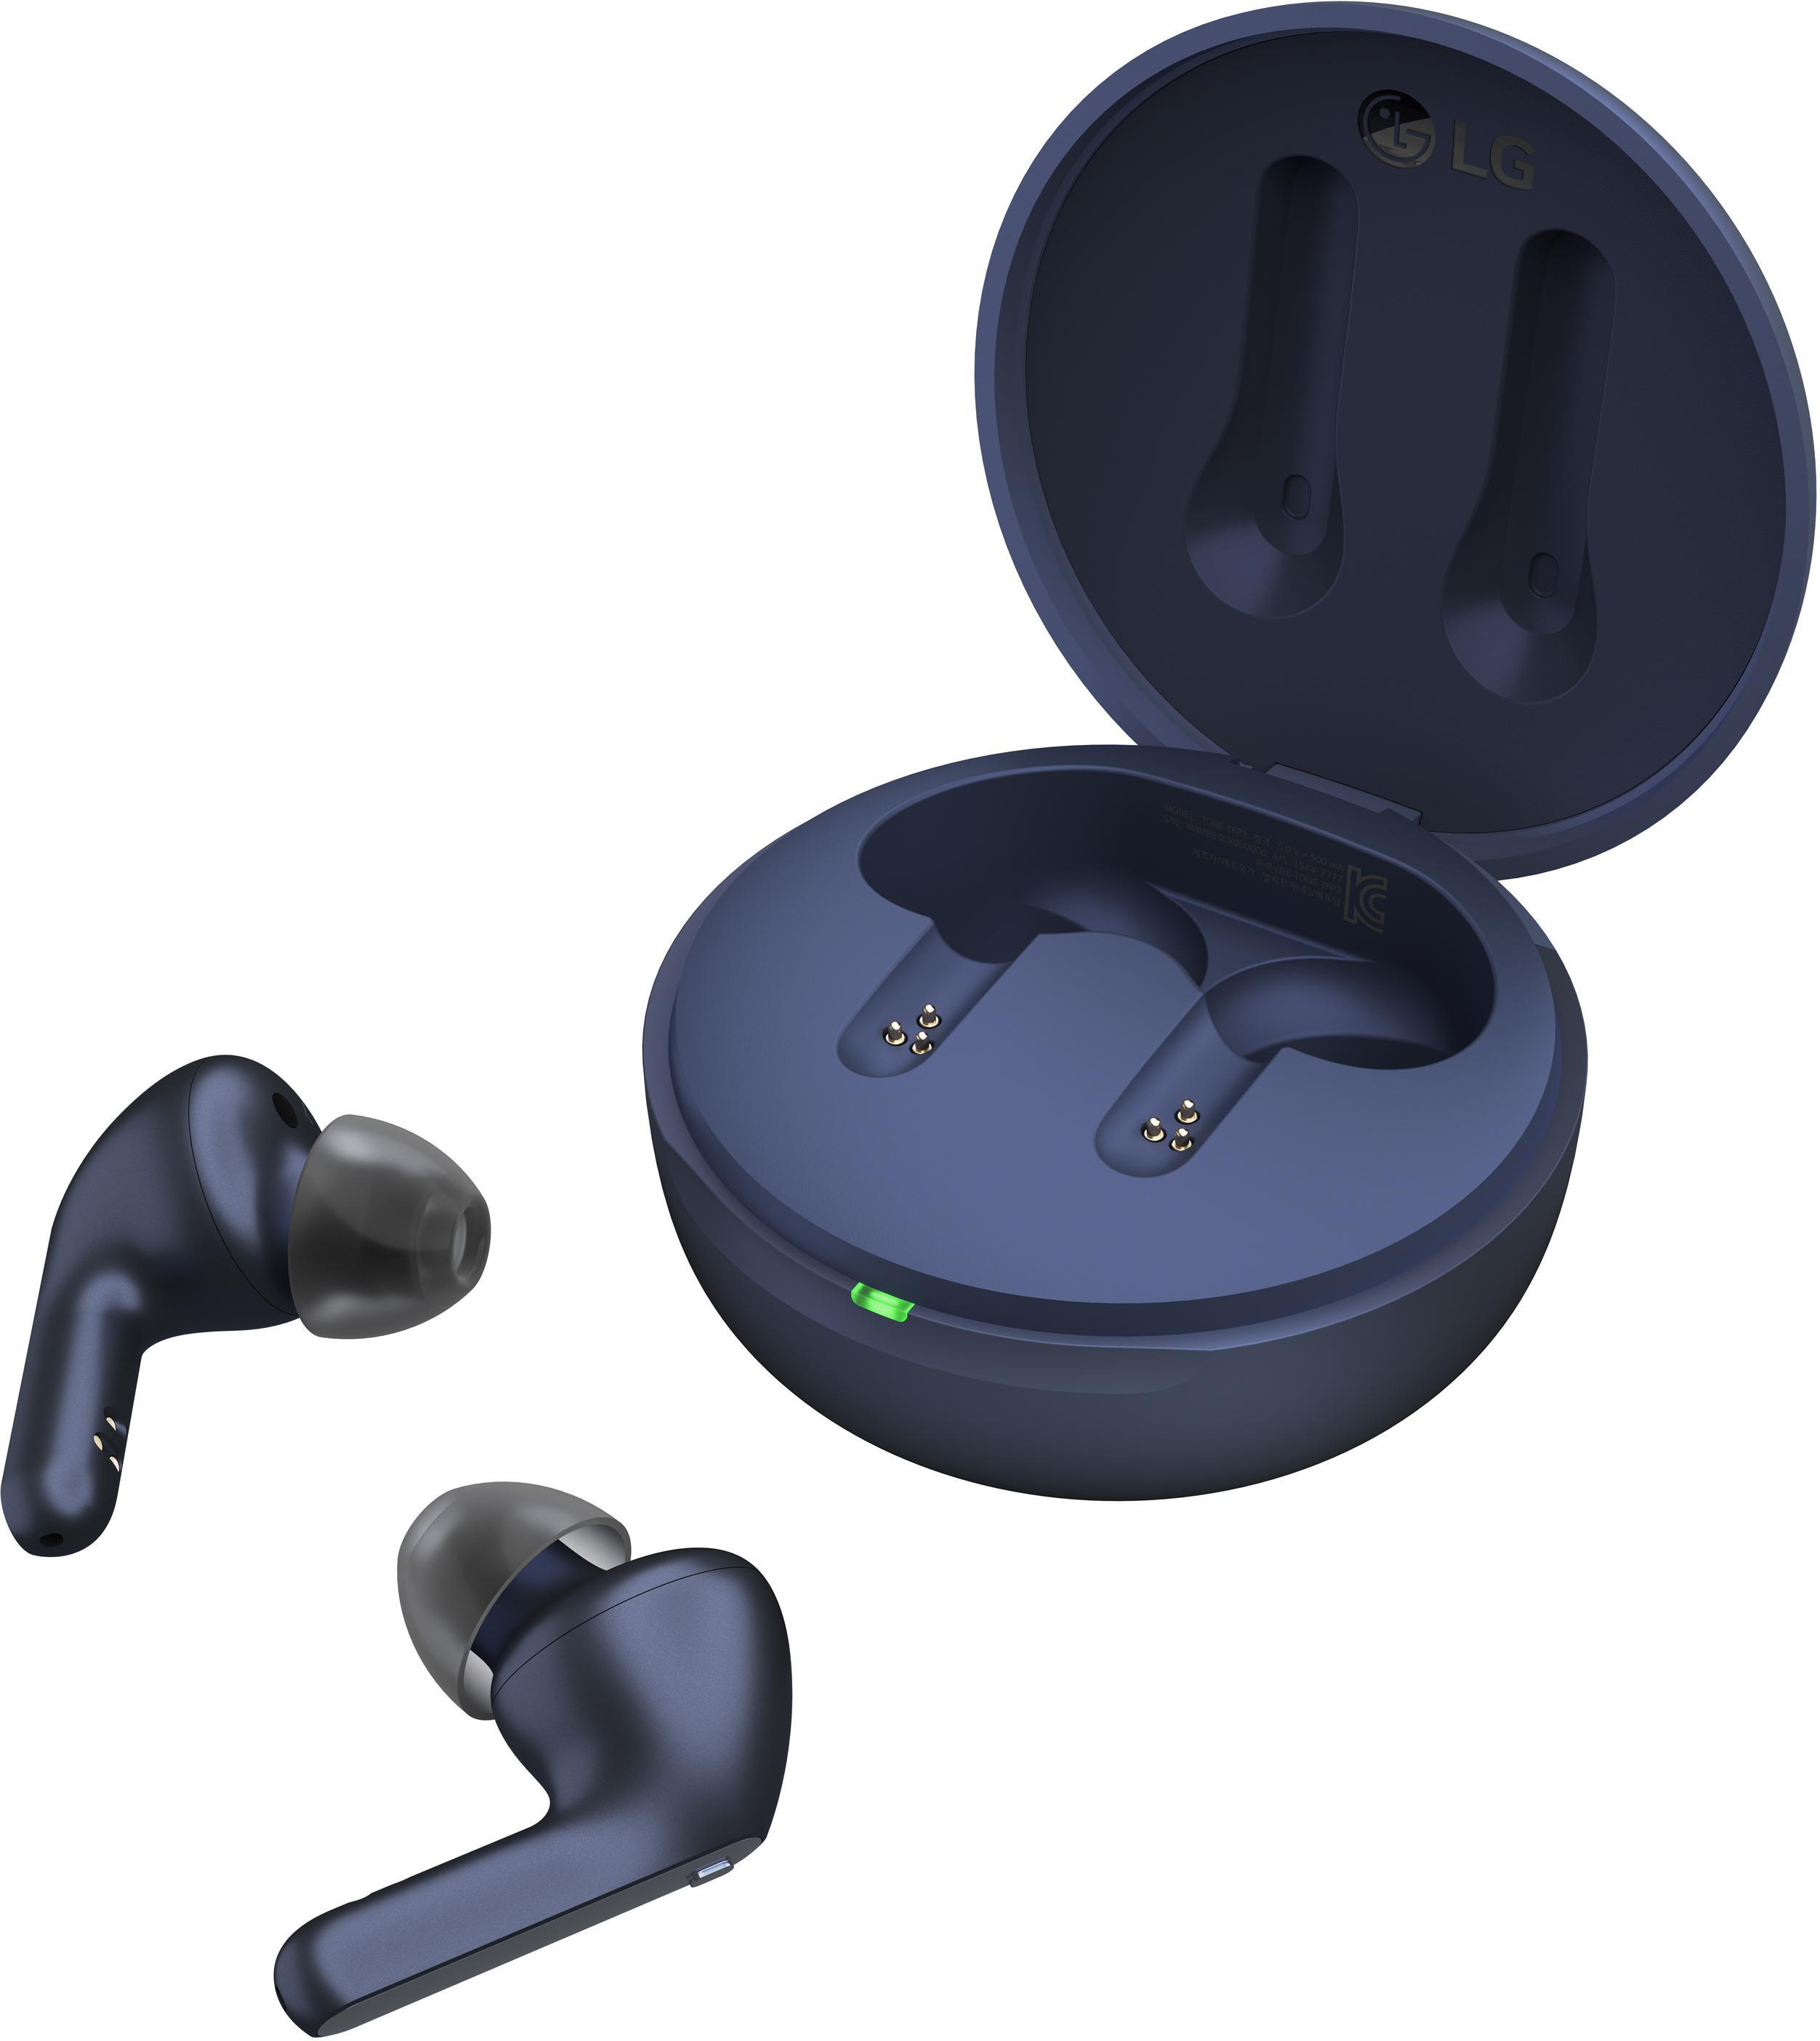 LG TONE Free Kopfhörer Wireless, Blue In-ear DFP3 True Bluetooth Eclipse